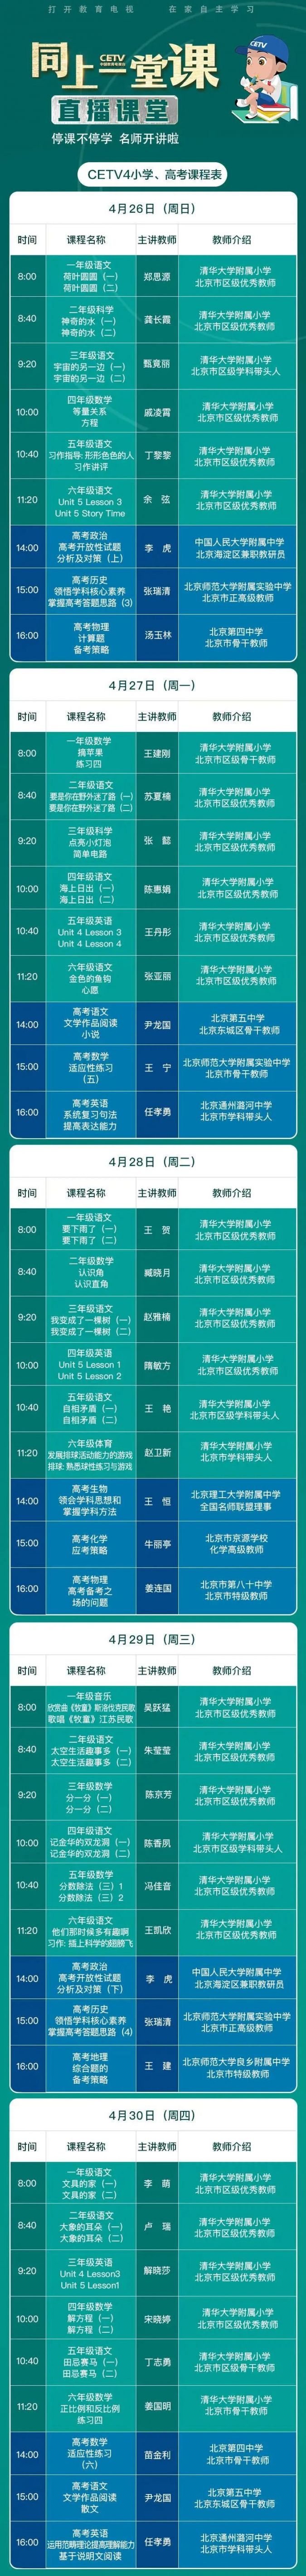 中国教育台cetv4同上一堂课课程表4月26日-4月30日